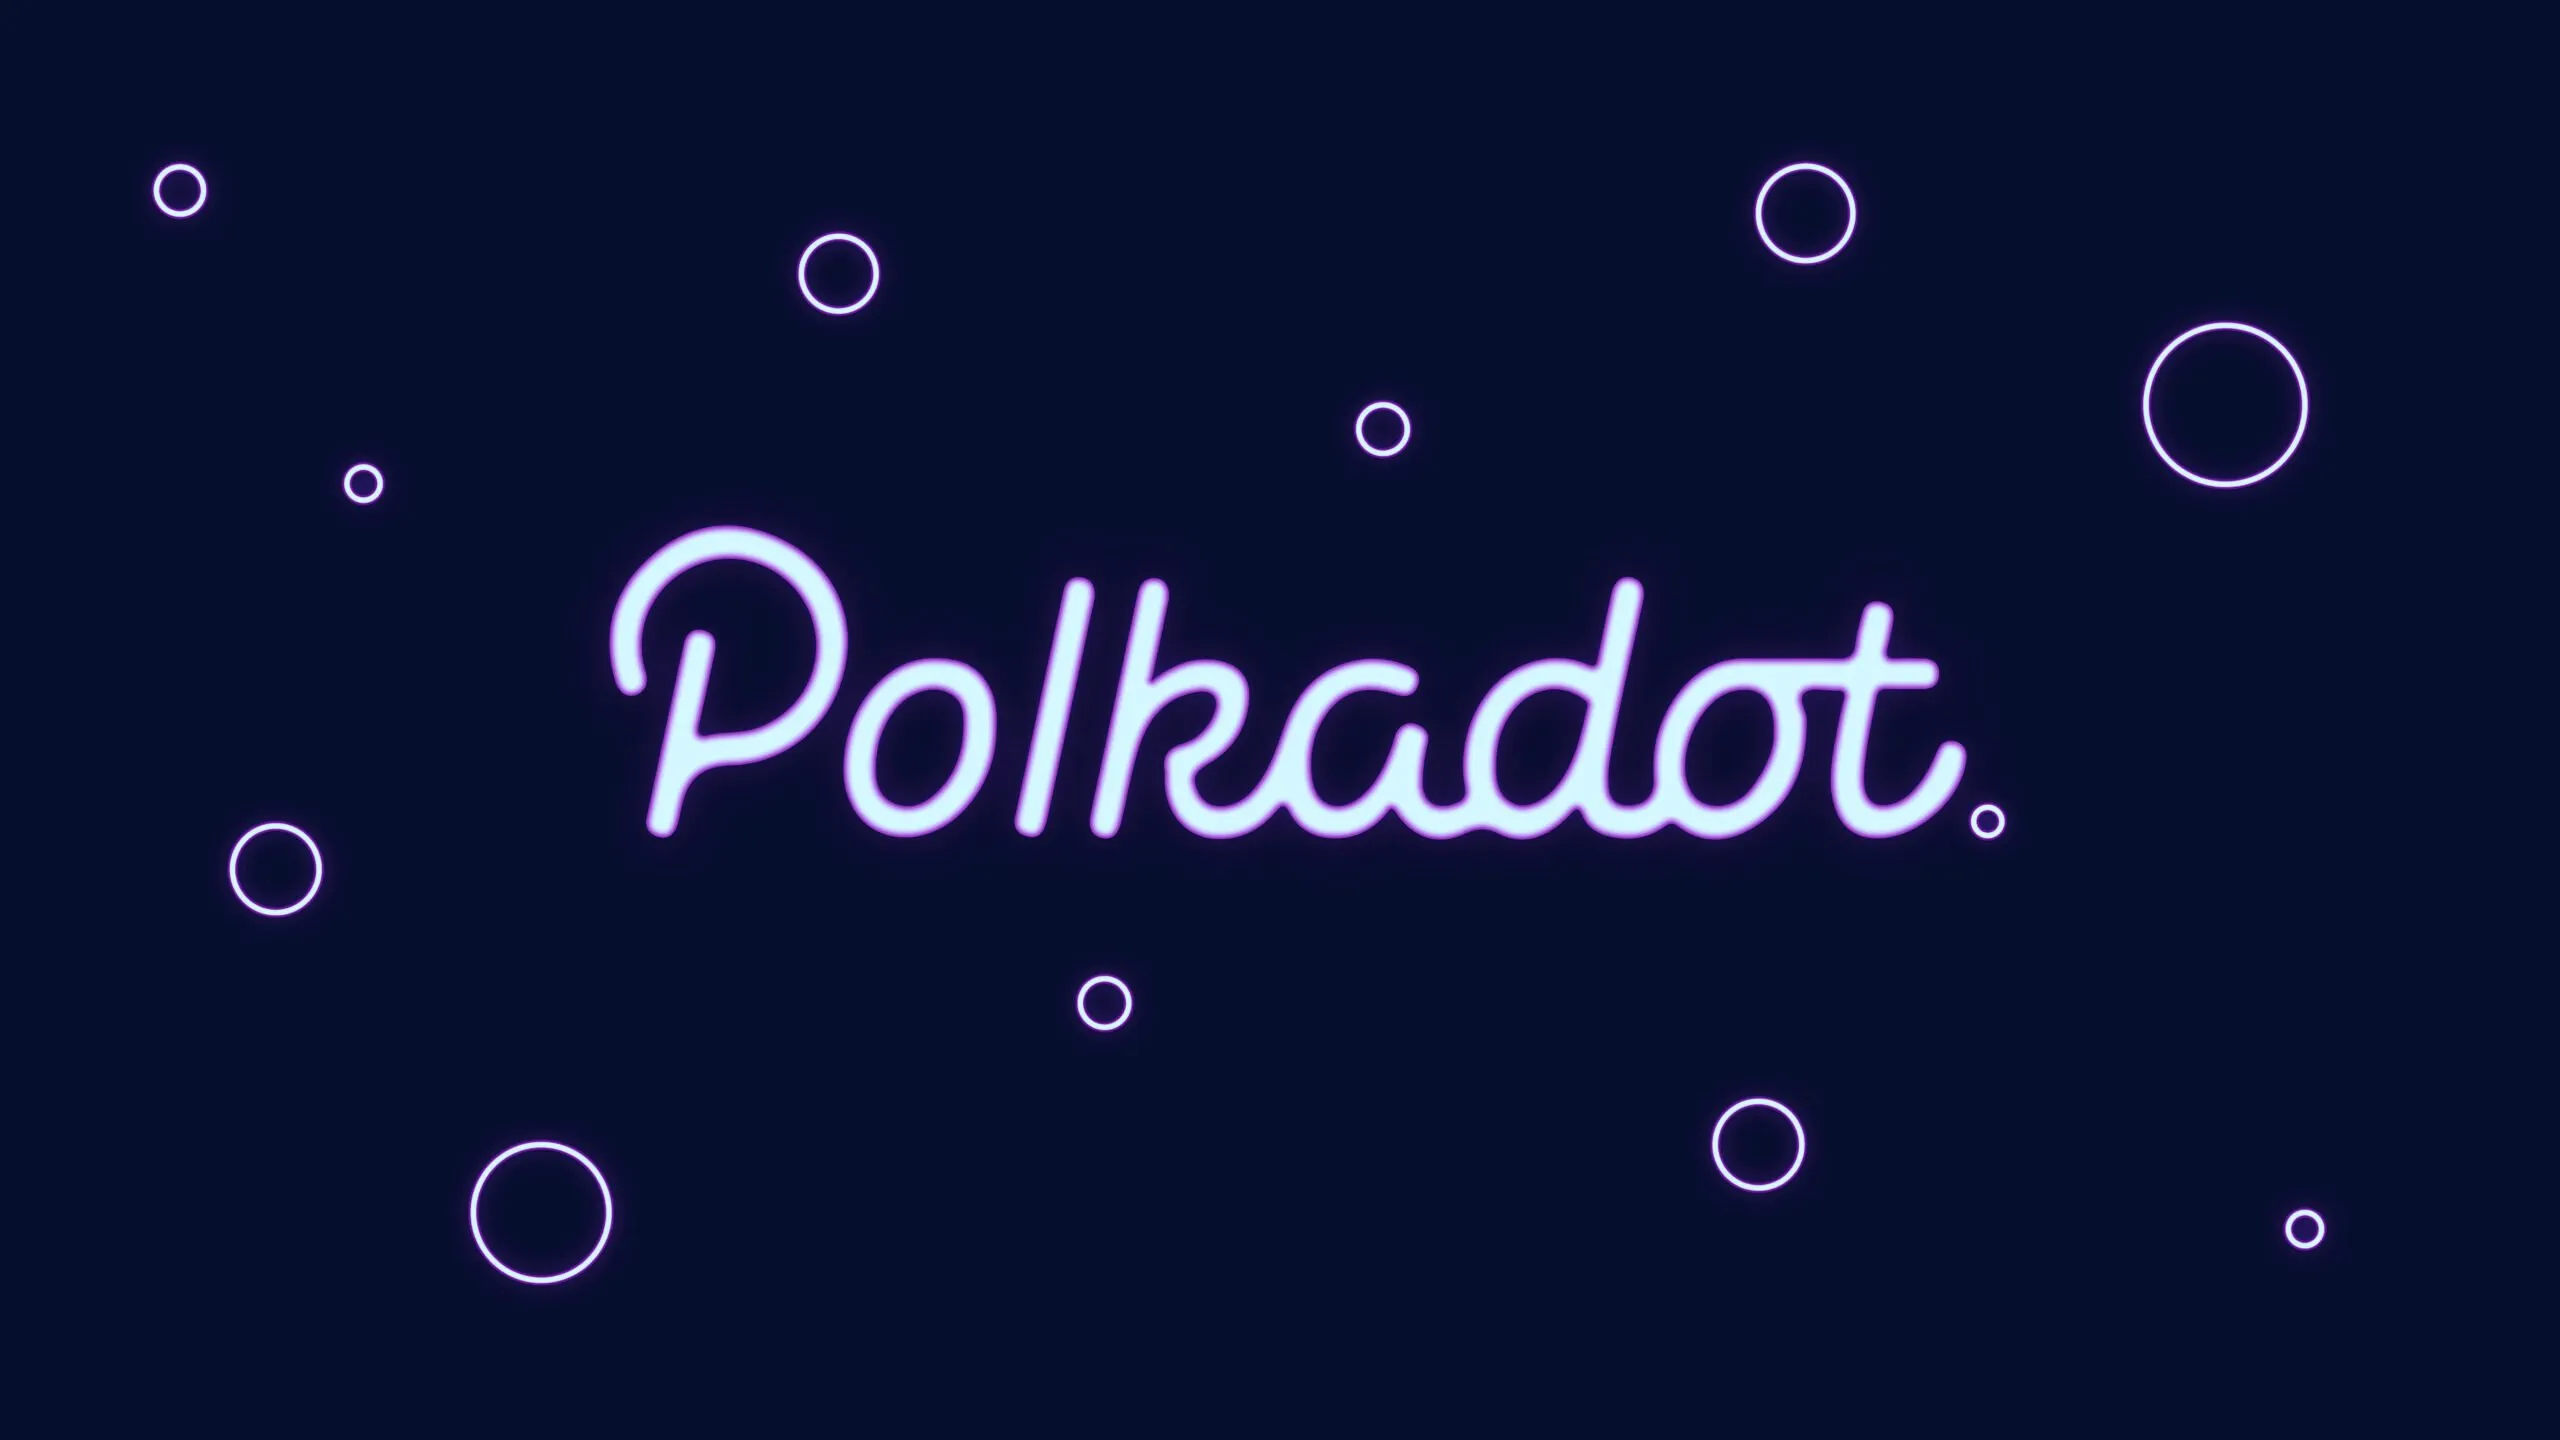 La interoberabilidad y escalabilidad de Polkadot son atractivas para los desarrolladores. Imagen: Shutterstock